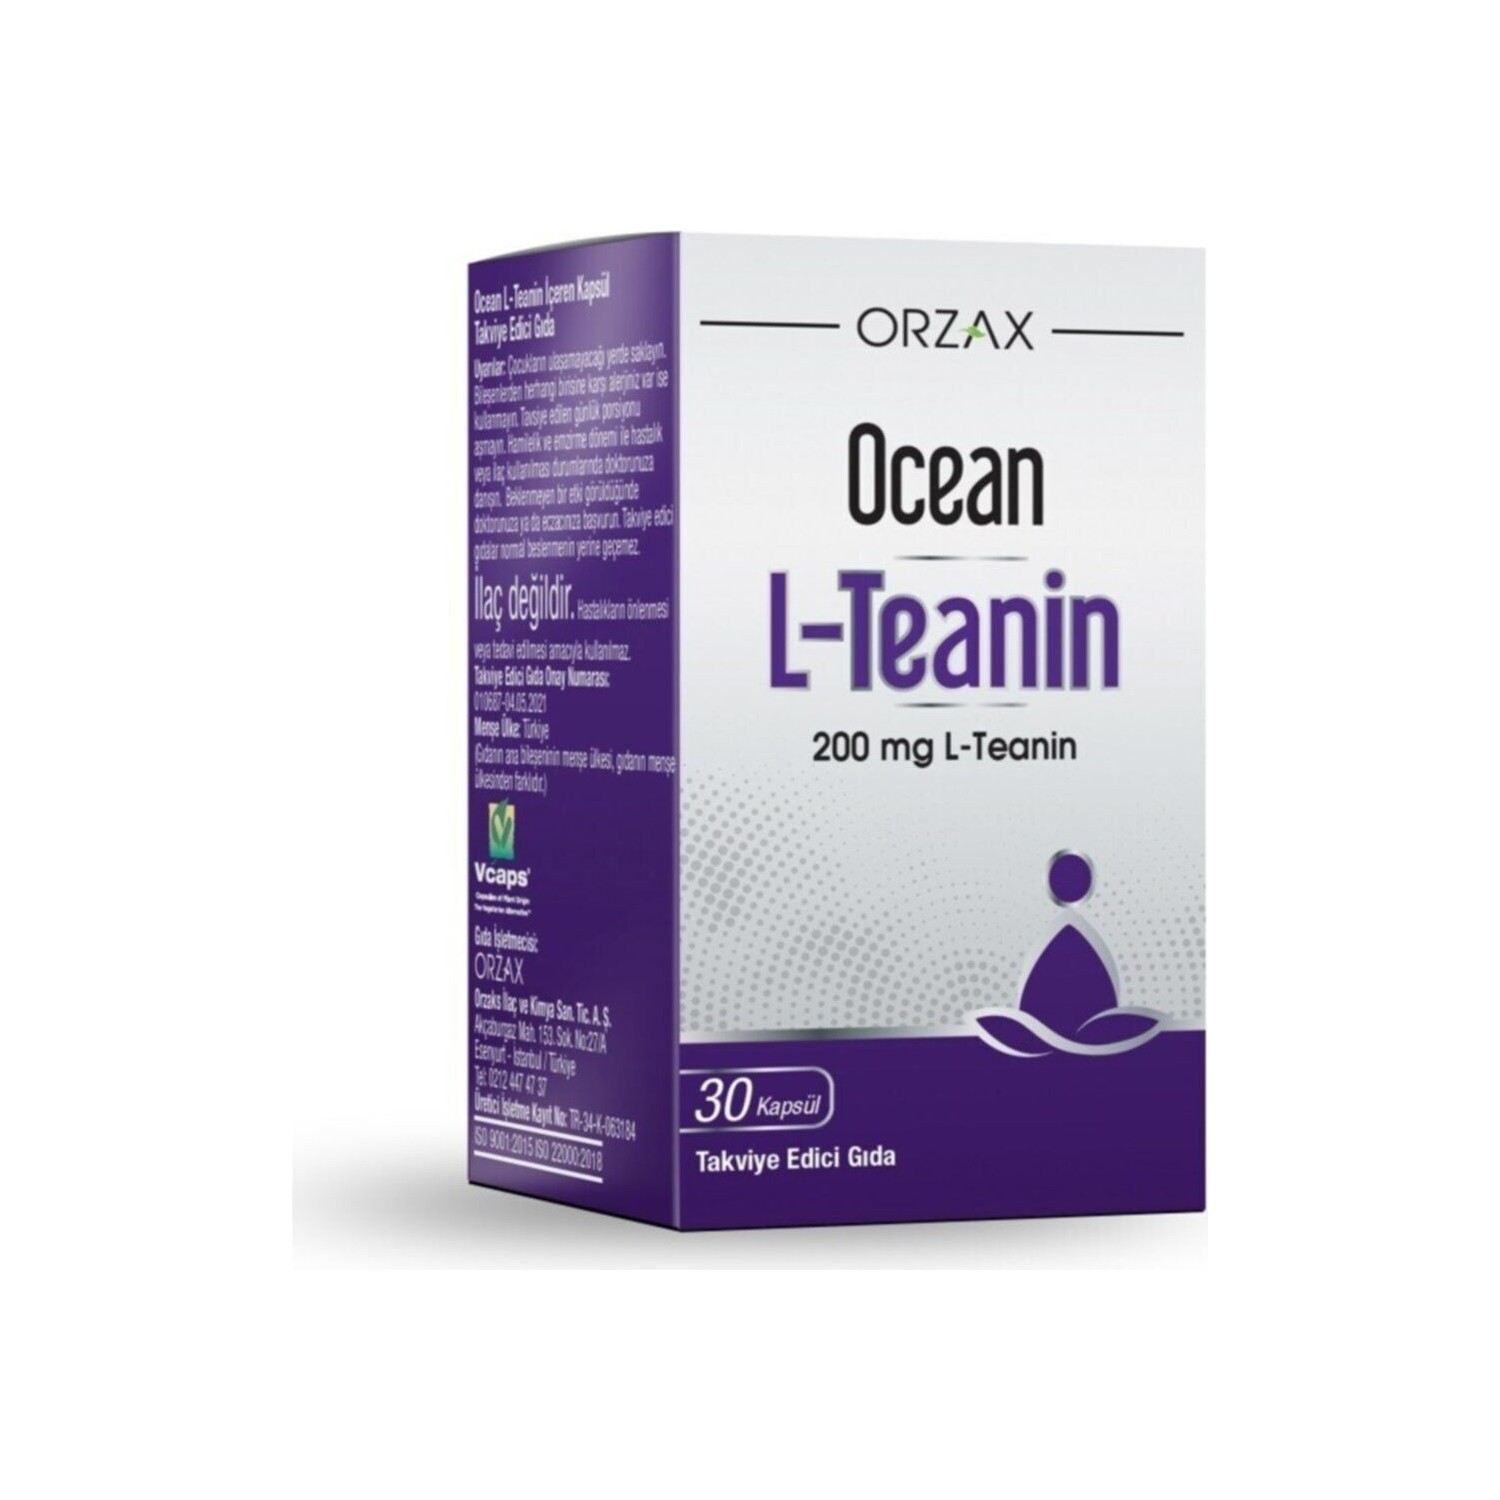 solgar l теанин в свободной форме 150 мг 60 растительных капсул L-теанин Ocean 200 мг, 30 капсул